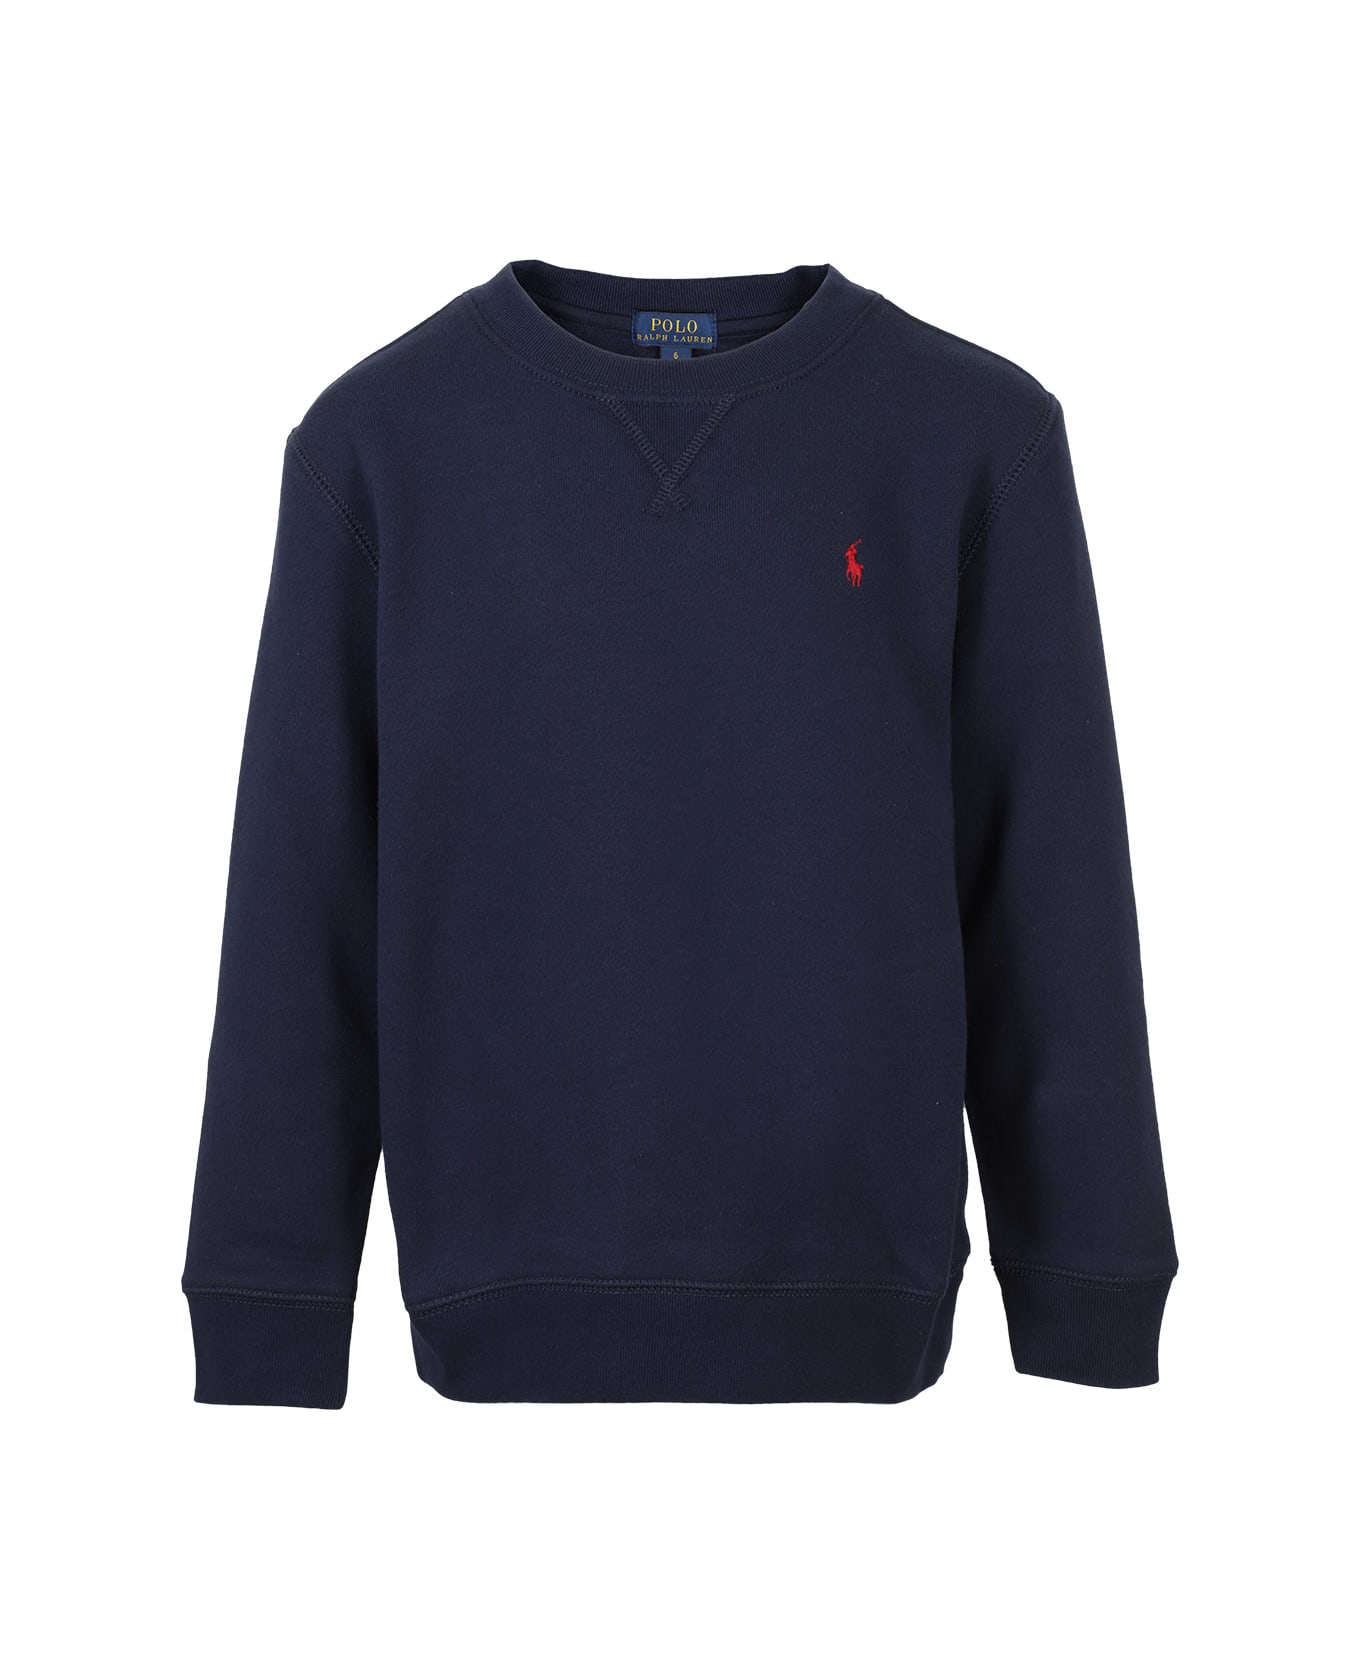 Polo Ralph Lauren Sweatshirt - Navy